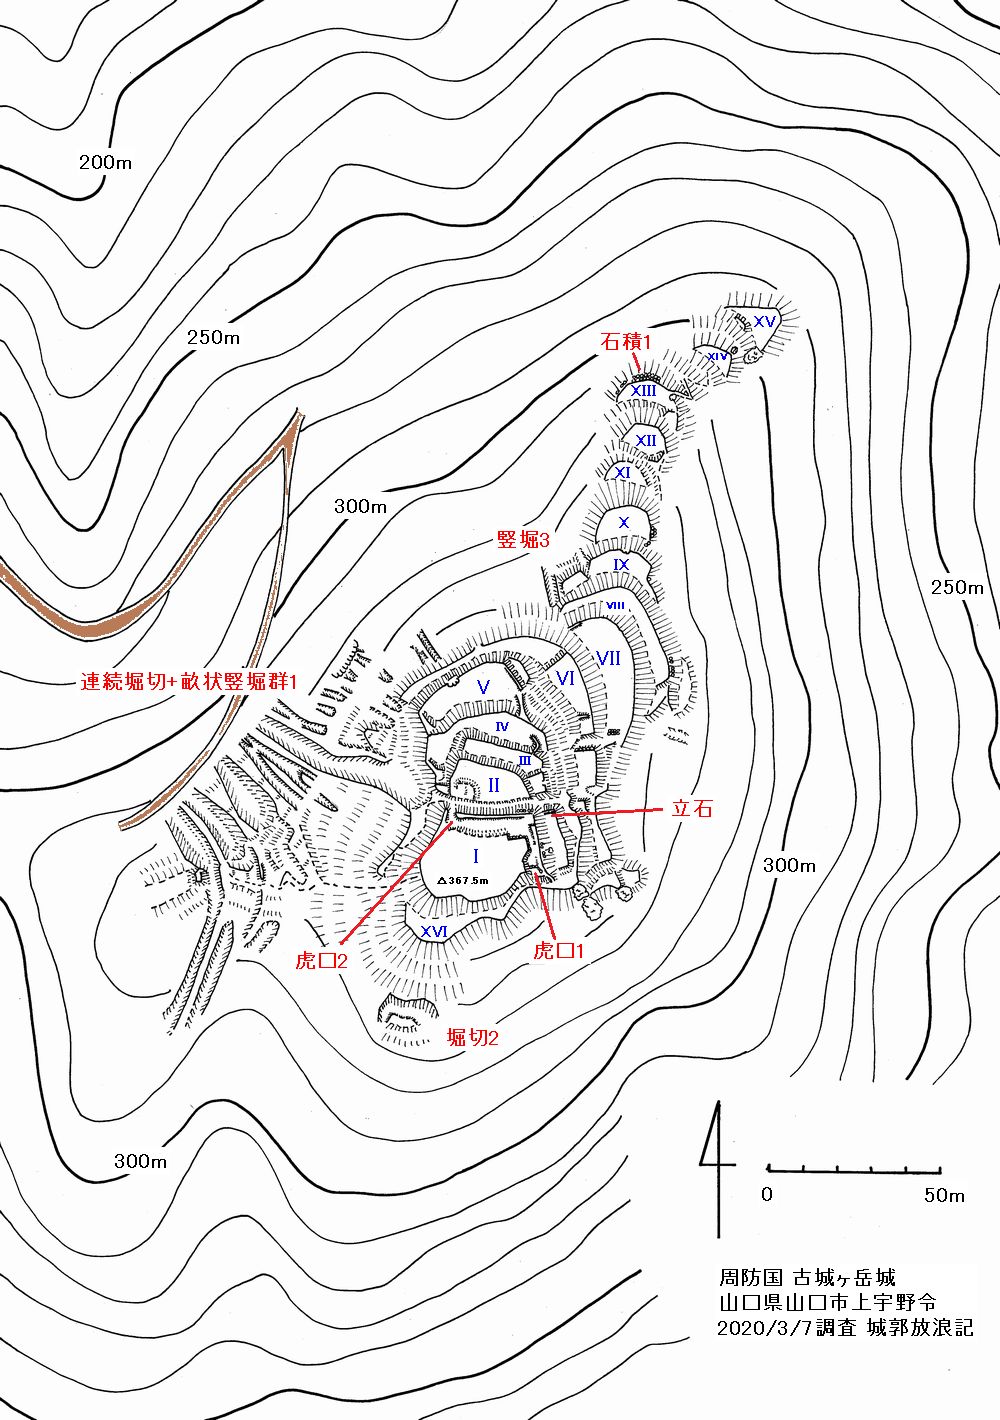 周防 古城ヶ岳城の縄張図